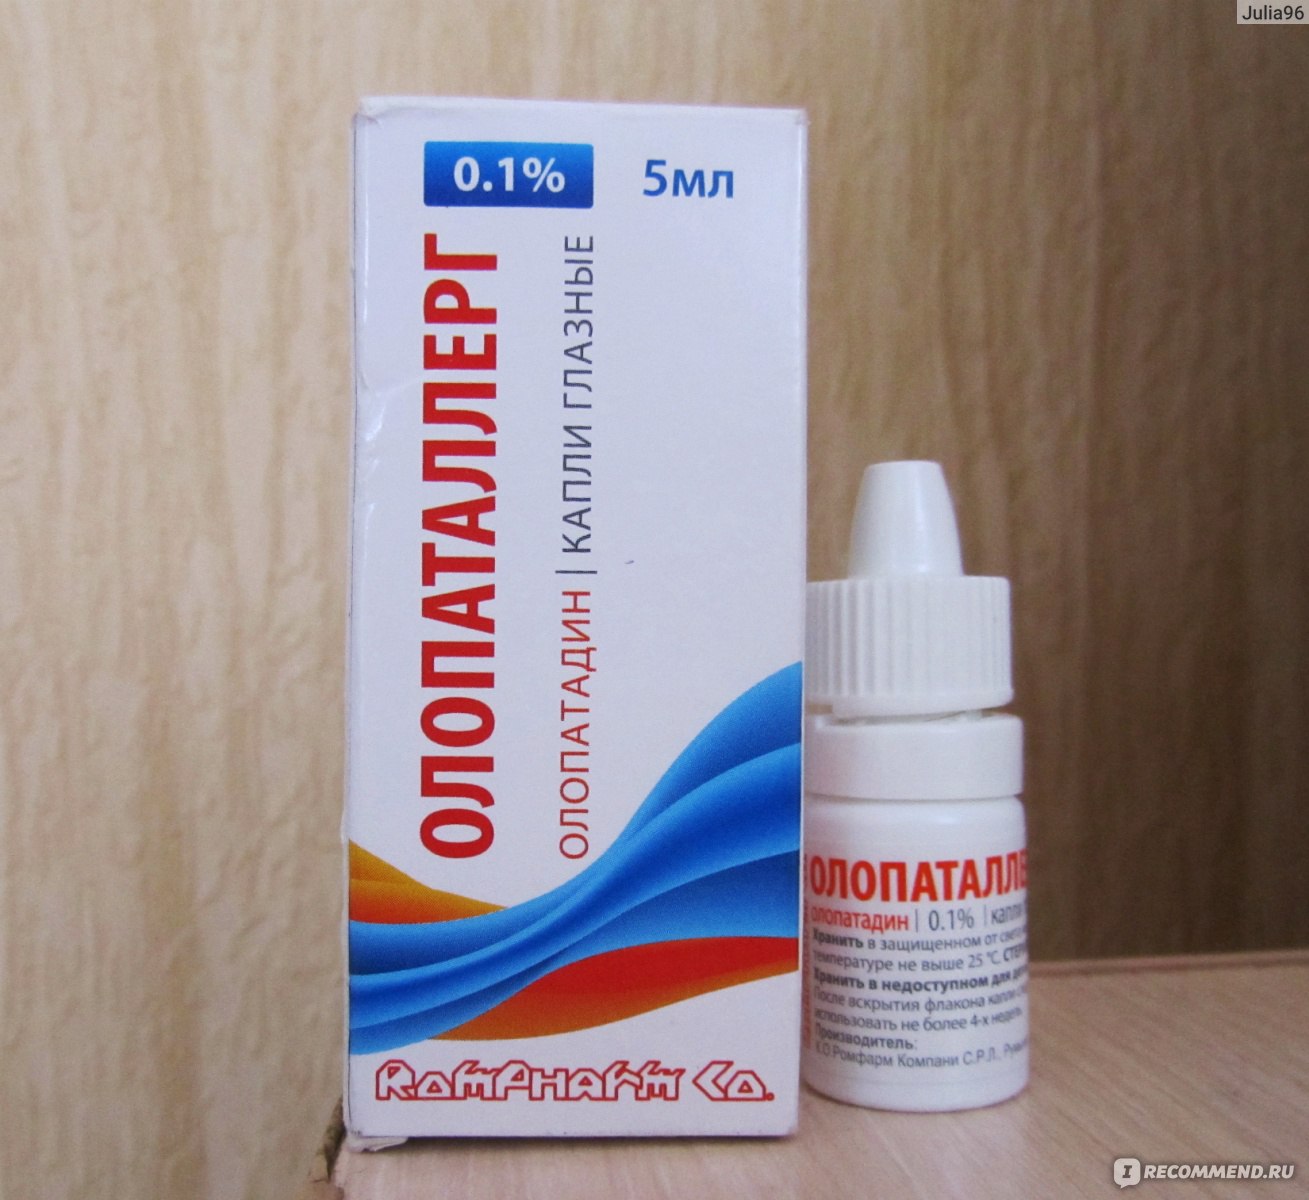 Средства для лечения аллергии Rompharm Co Олопаталлерг капли глазные .